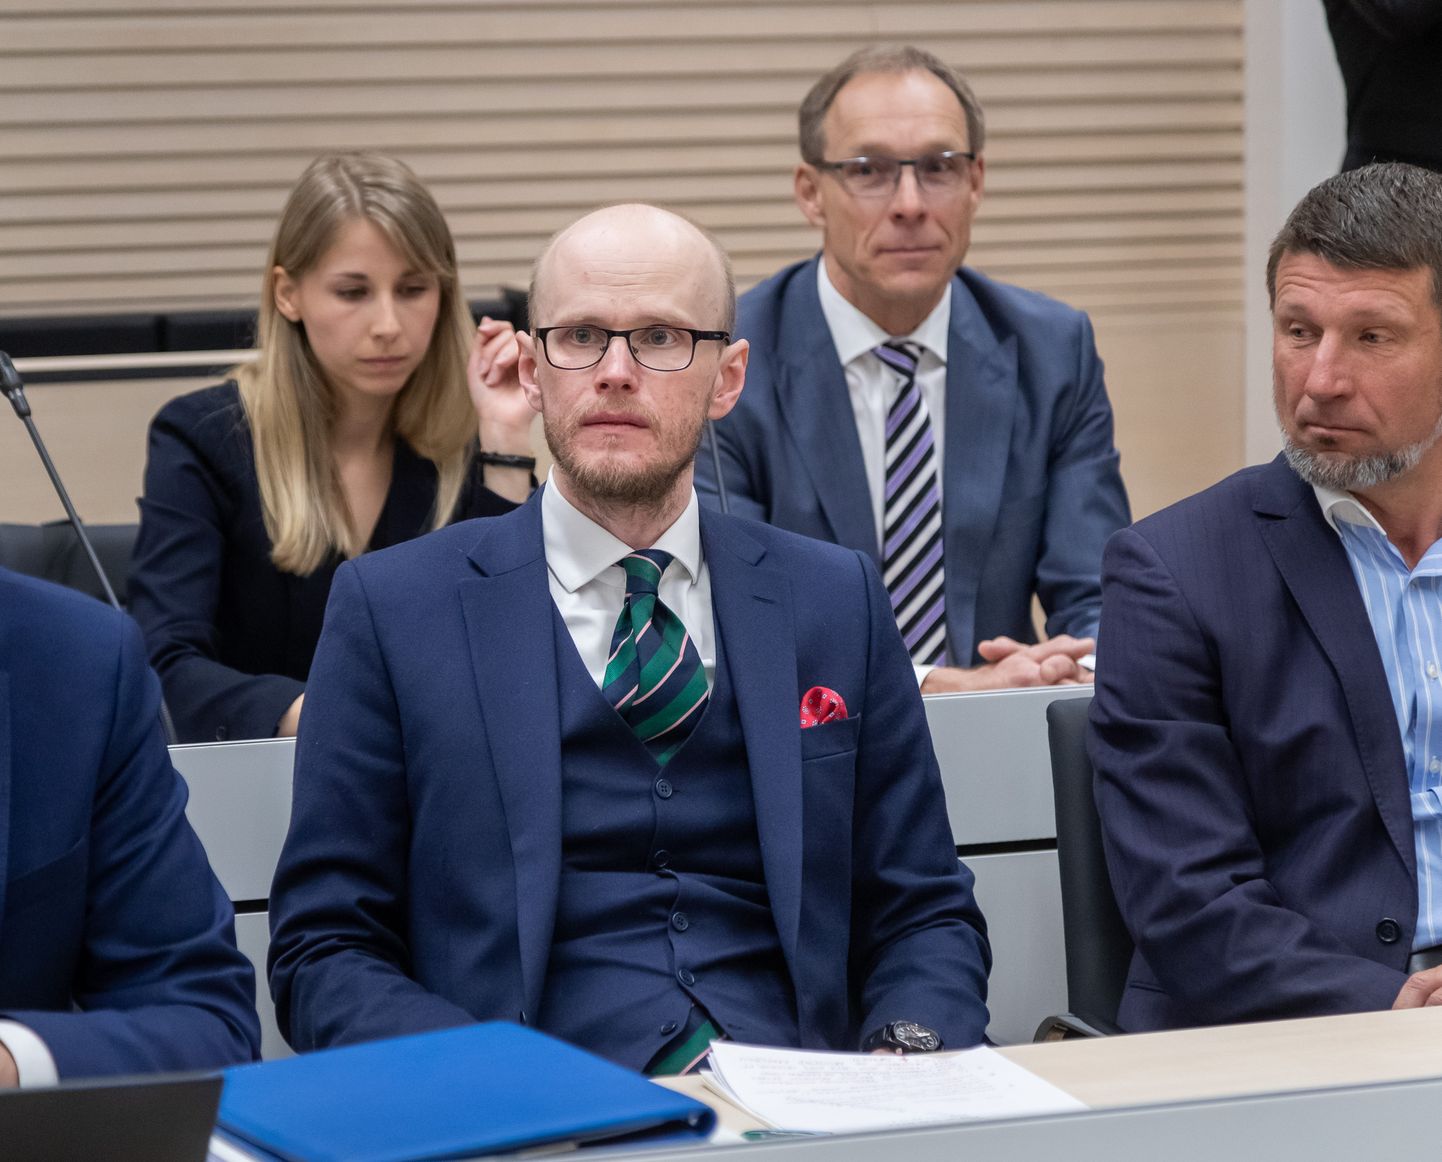 Harju maakohtus algas täna kohtuprotsess altkäemaksu võtmises ja rahapesus süüdistatavate Tallinna Sadama eksjuhtide Allan Kiili ja Ain Kaljuranna üle.